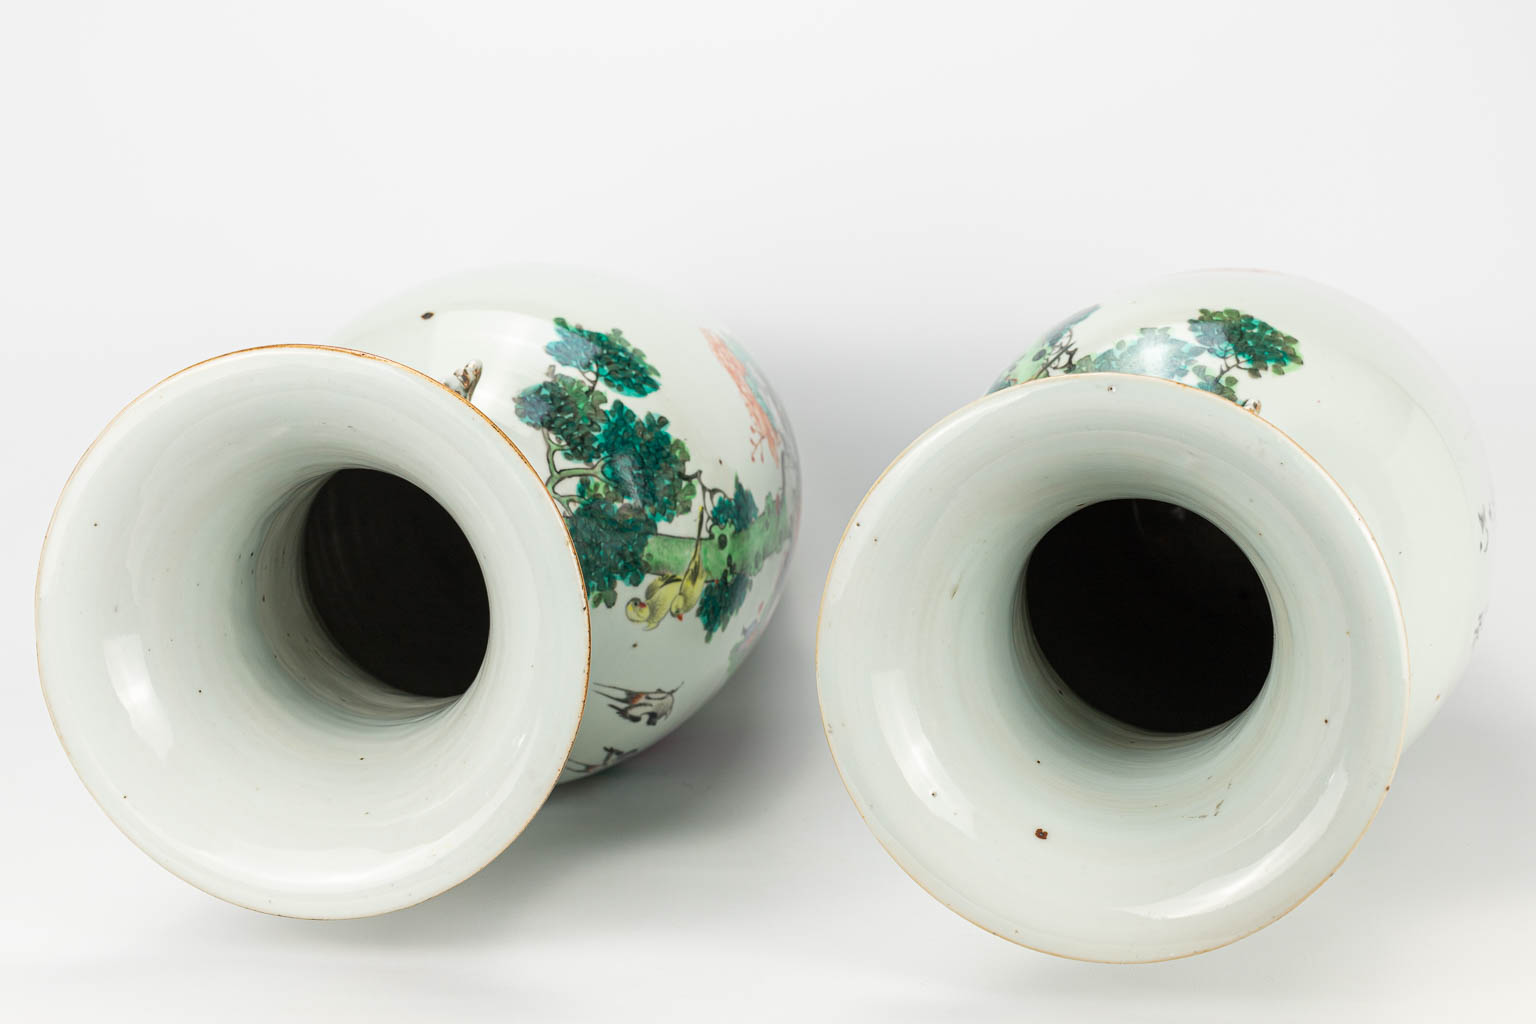 Een paar vazen gemaakt uit Chinees porselein versierd met pauwen en kraanvogels.